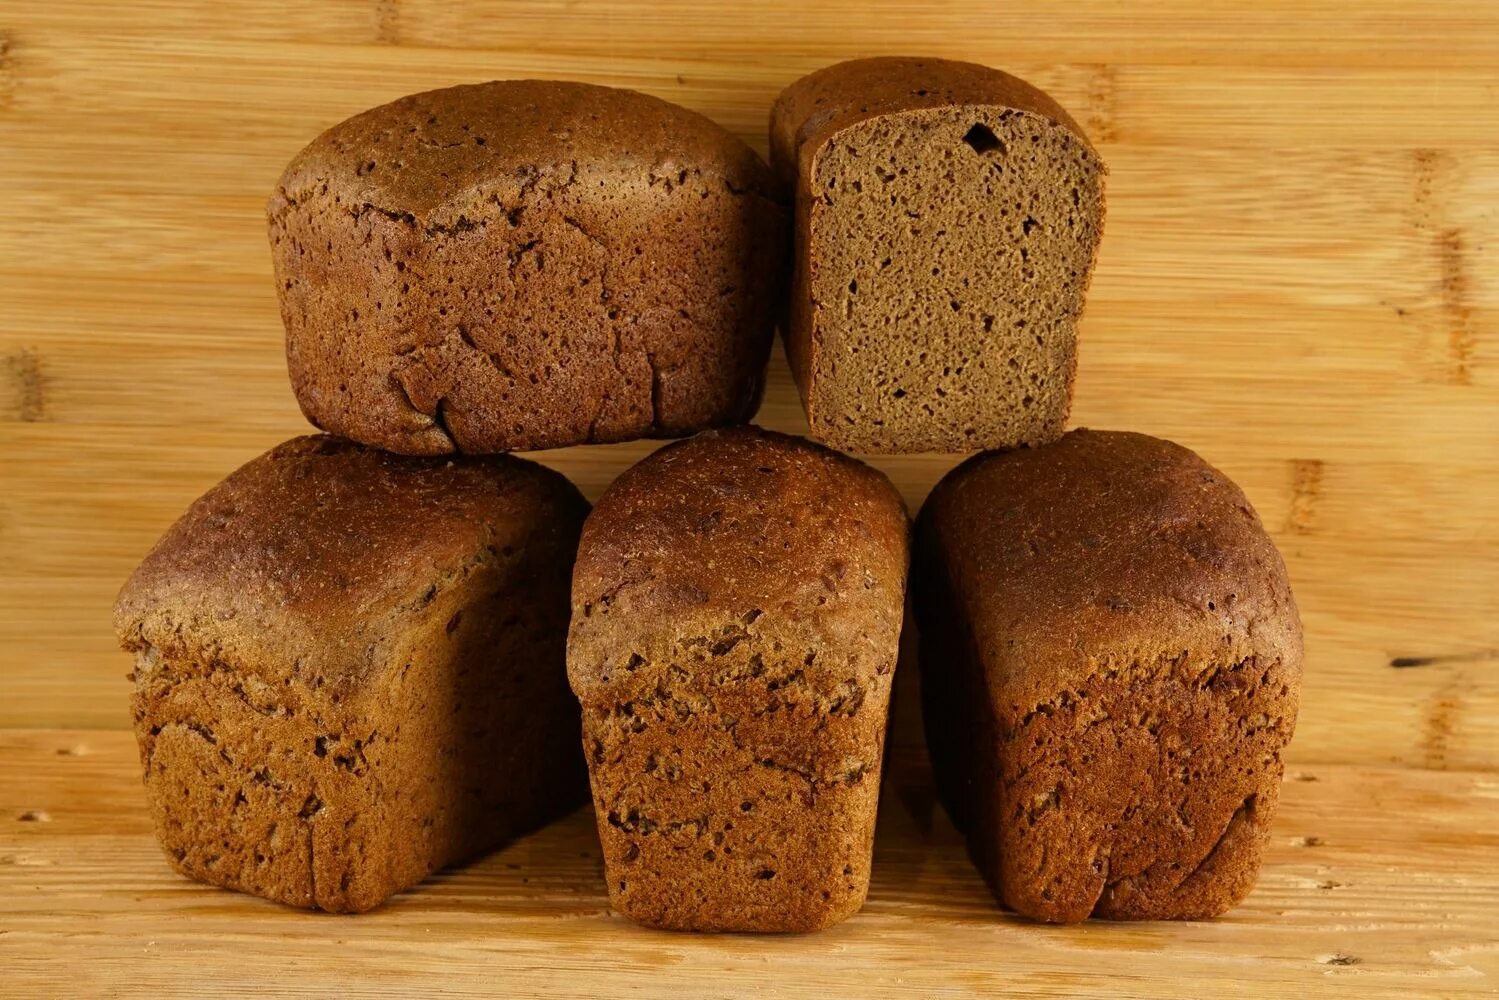 Ржано-пшеничный хлеб. Ржано-пшеничный хлеб Буханка. Хлеб ржано-пшеничный формовой. Хлеб ржано пшеничный круглый. Буханки пшеничные